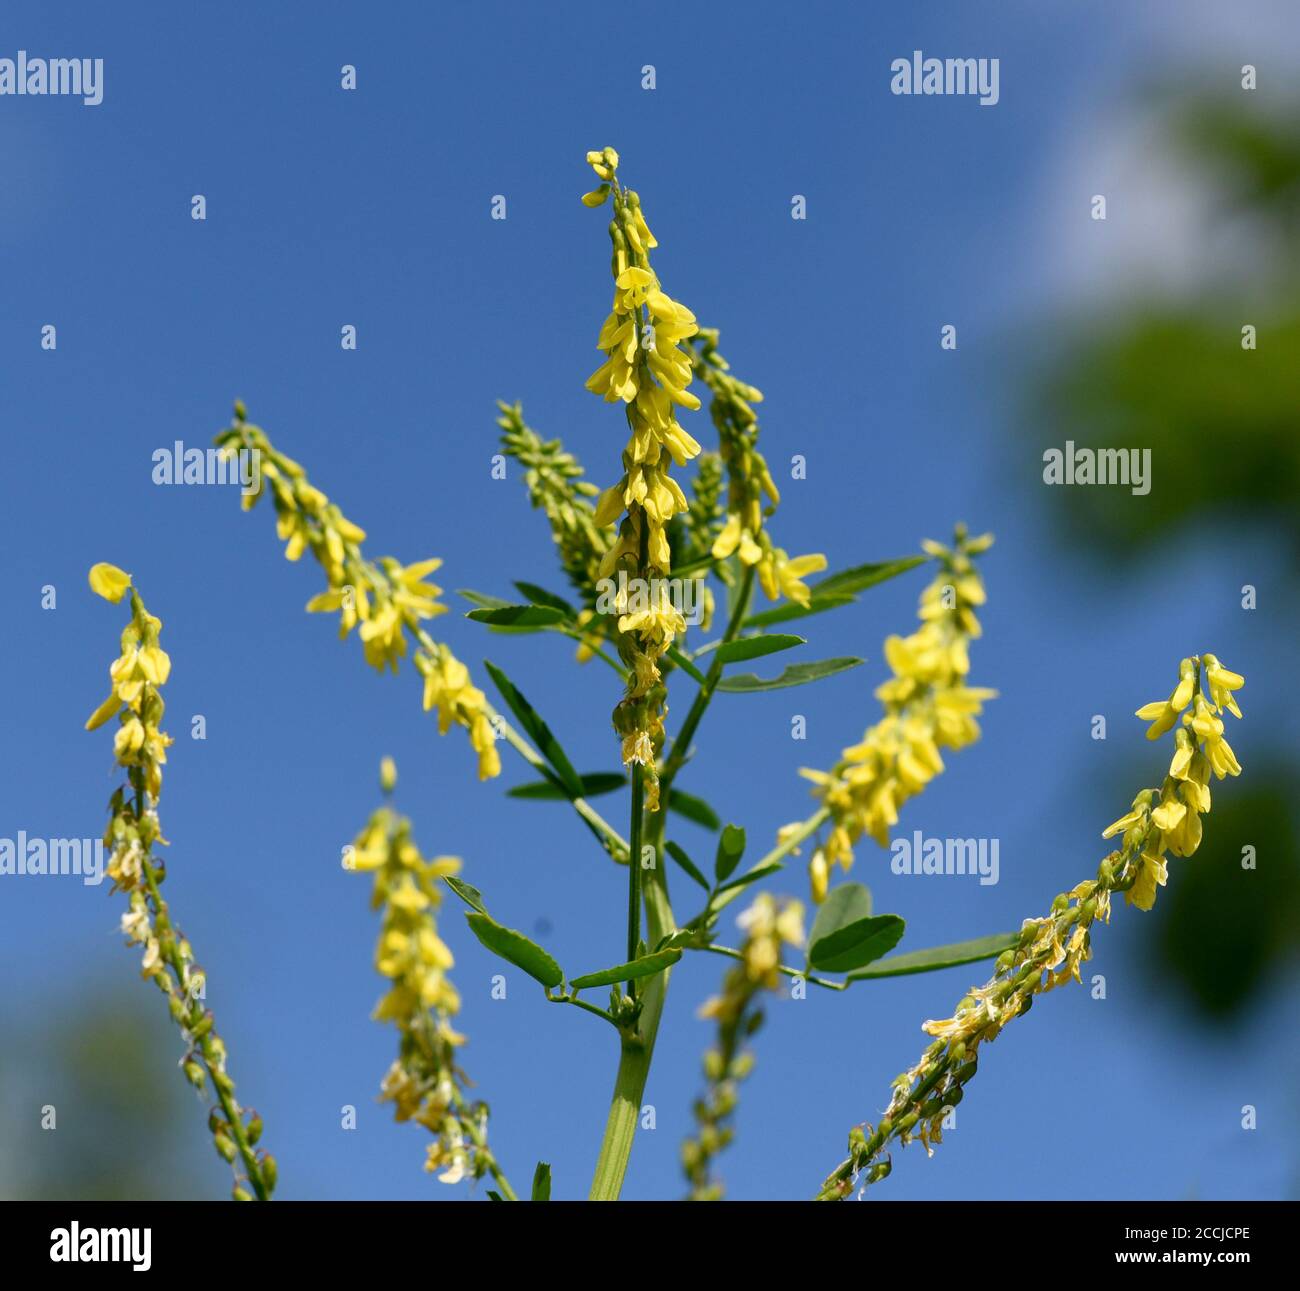 Steinklee, Melilotus officinalis, ist eine wichtige Heil- und Medizinalpflanze und mit weissen oder gelben Blueten. Trèfle doux, Melilotus officinal Banque D'Images